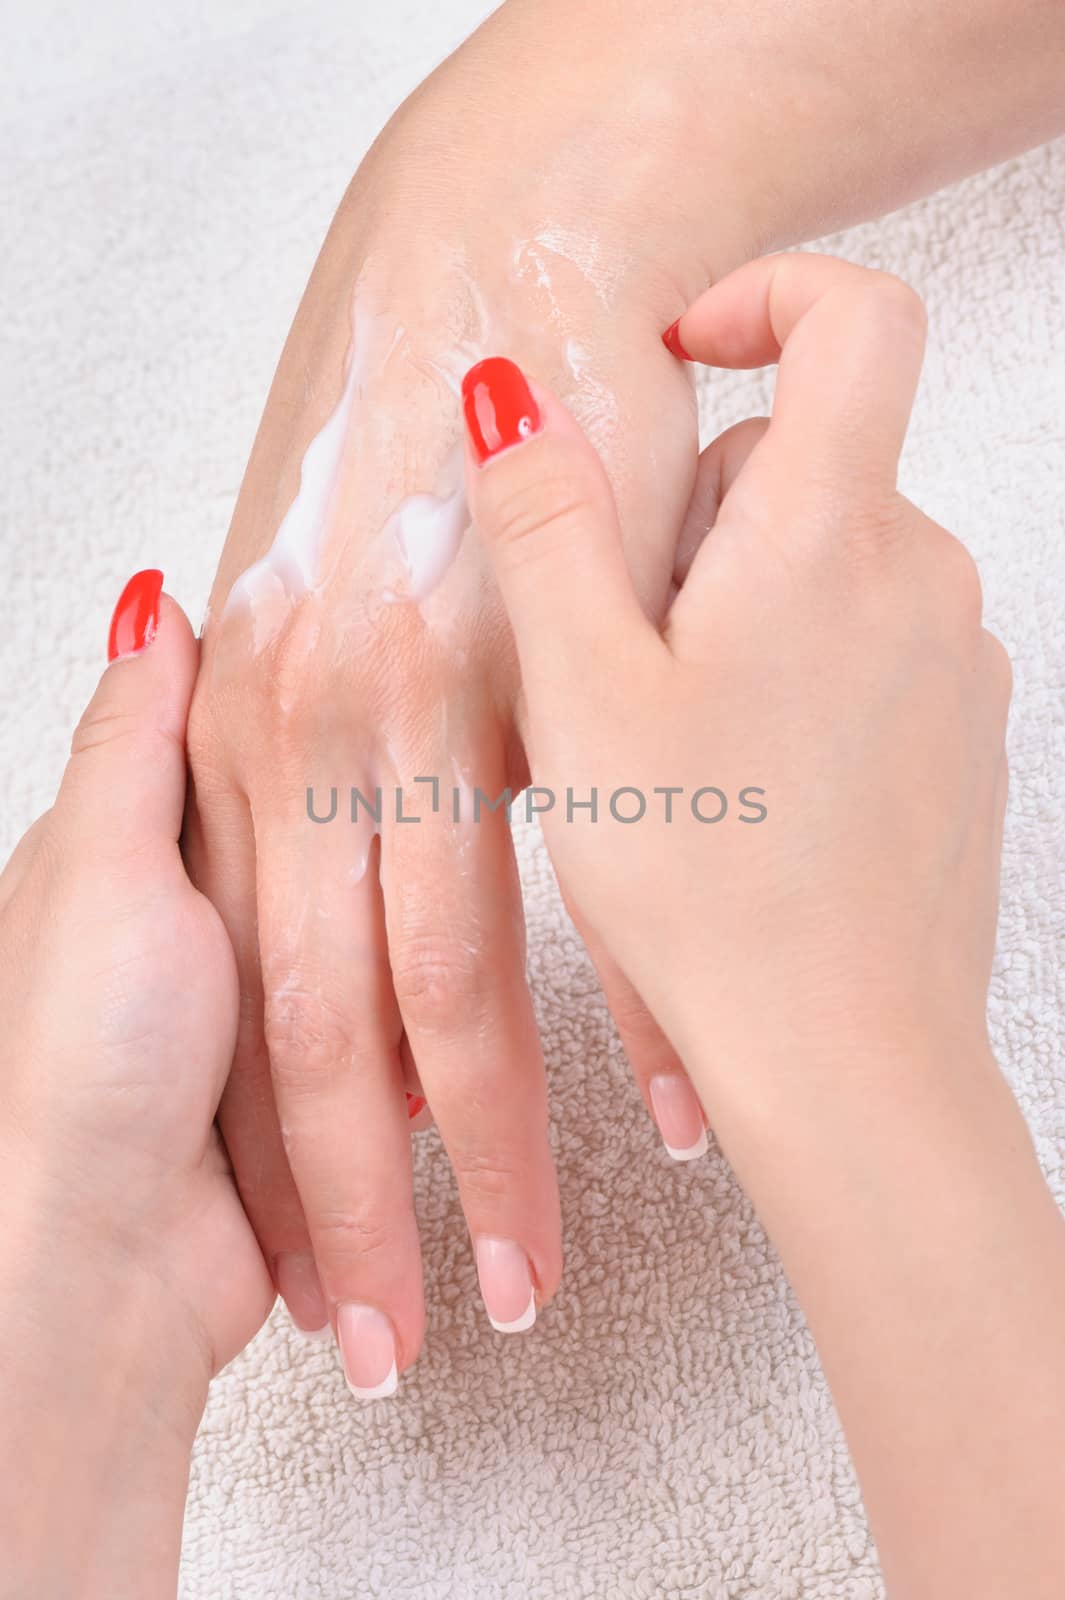 hands skin care - cream applying by starush